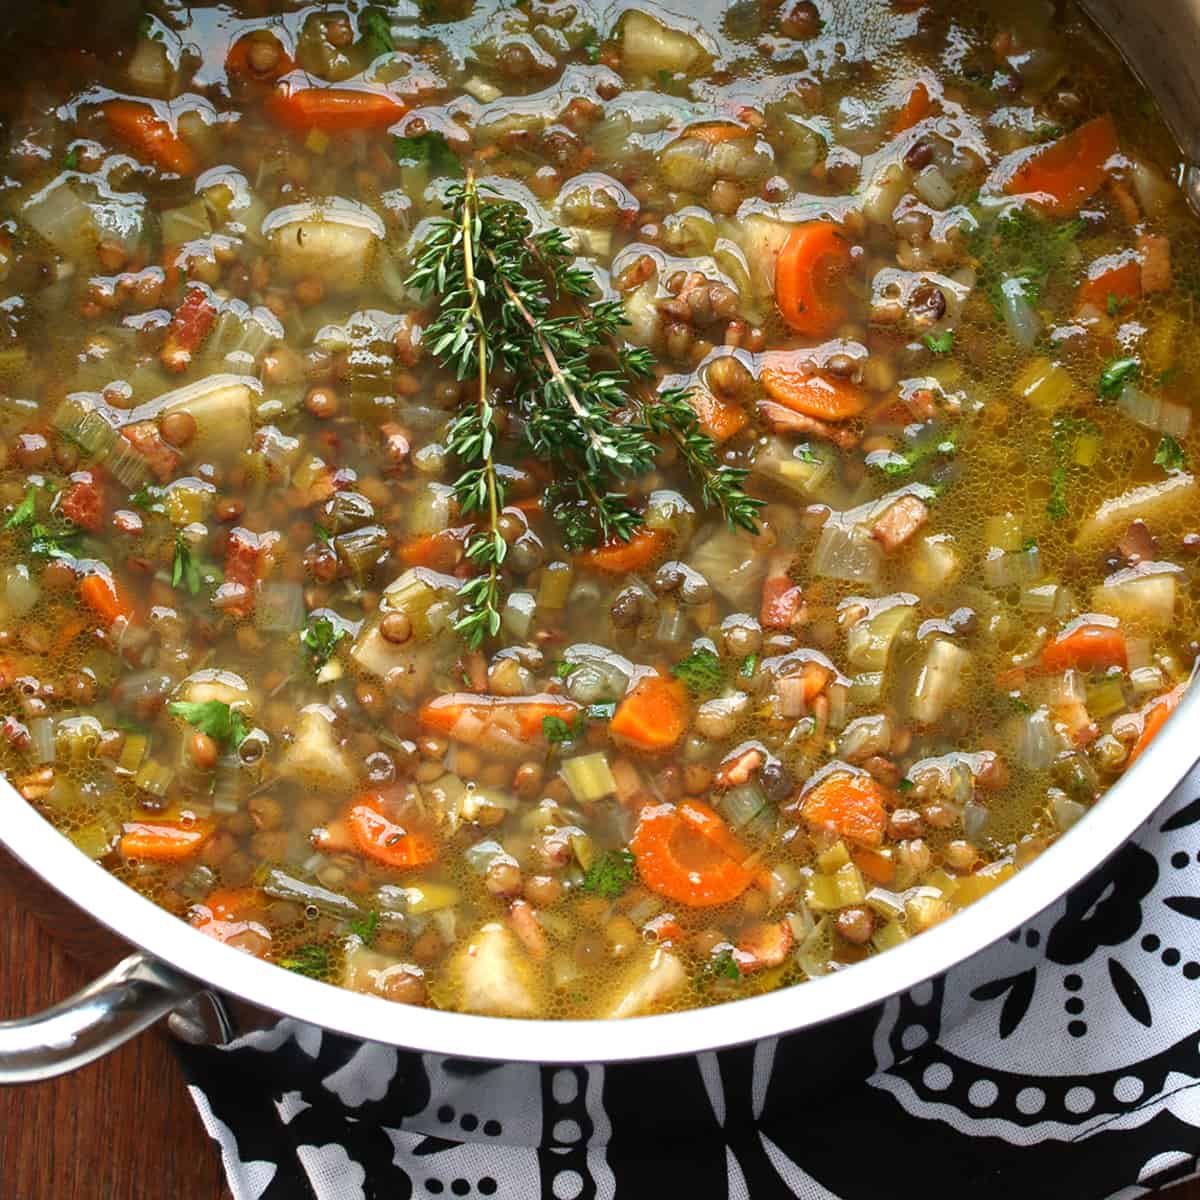 french lentil soup recipe traditional authentic best leek celeriac bacon puy lentils